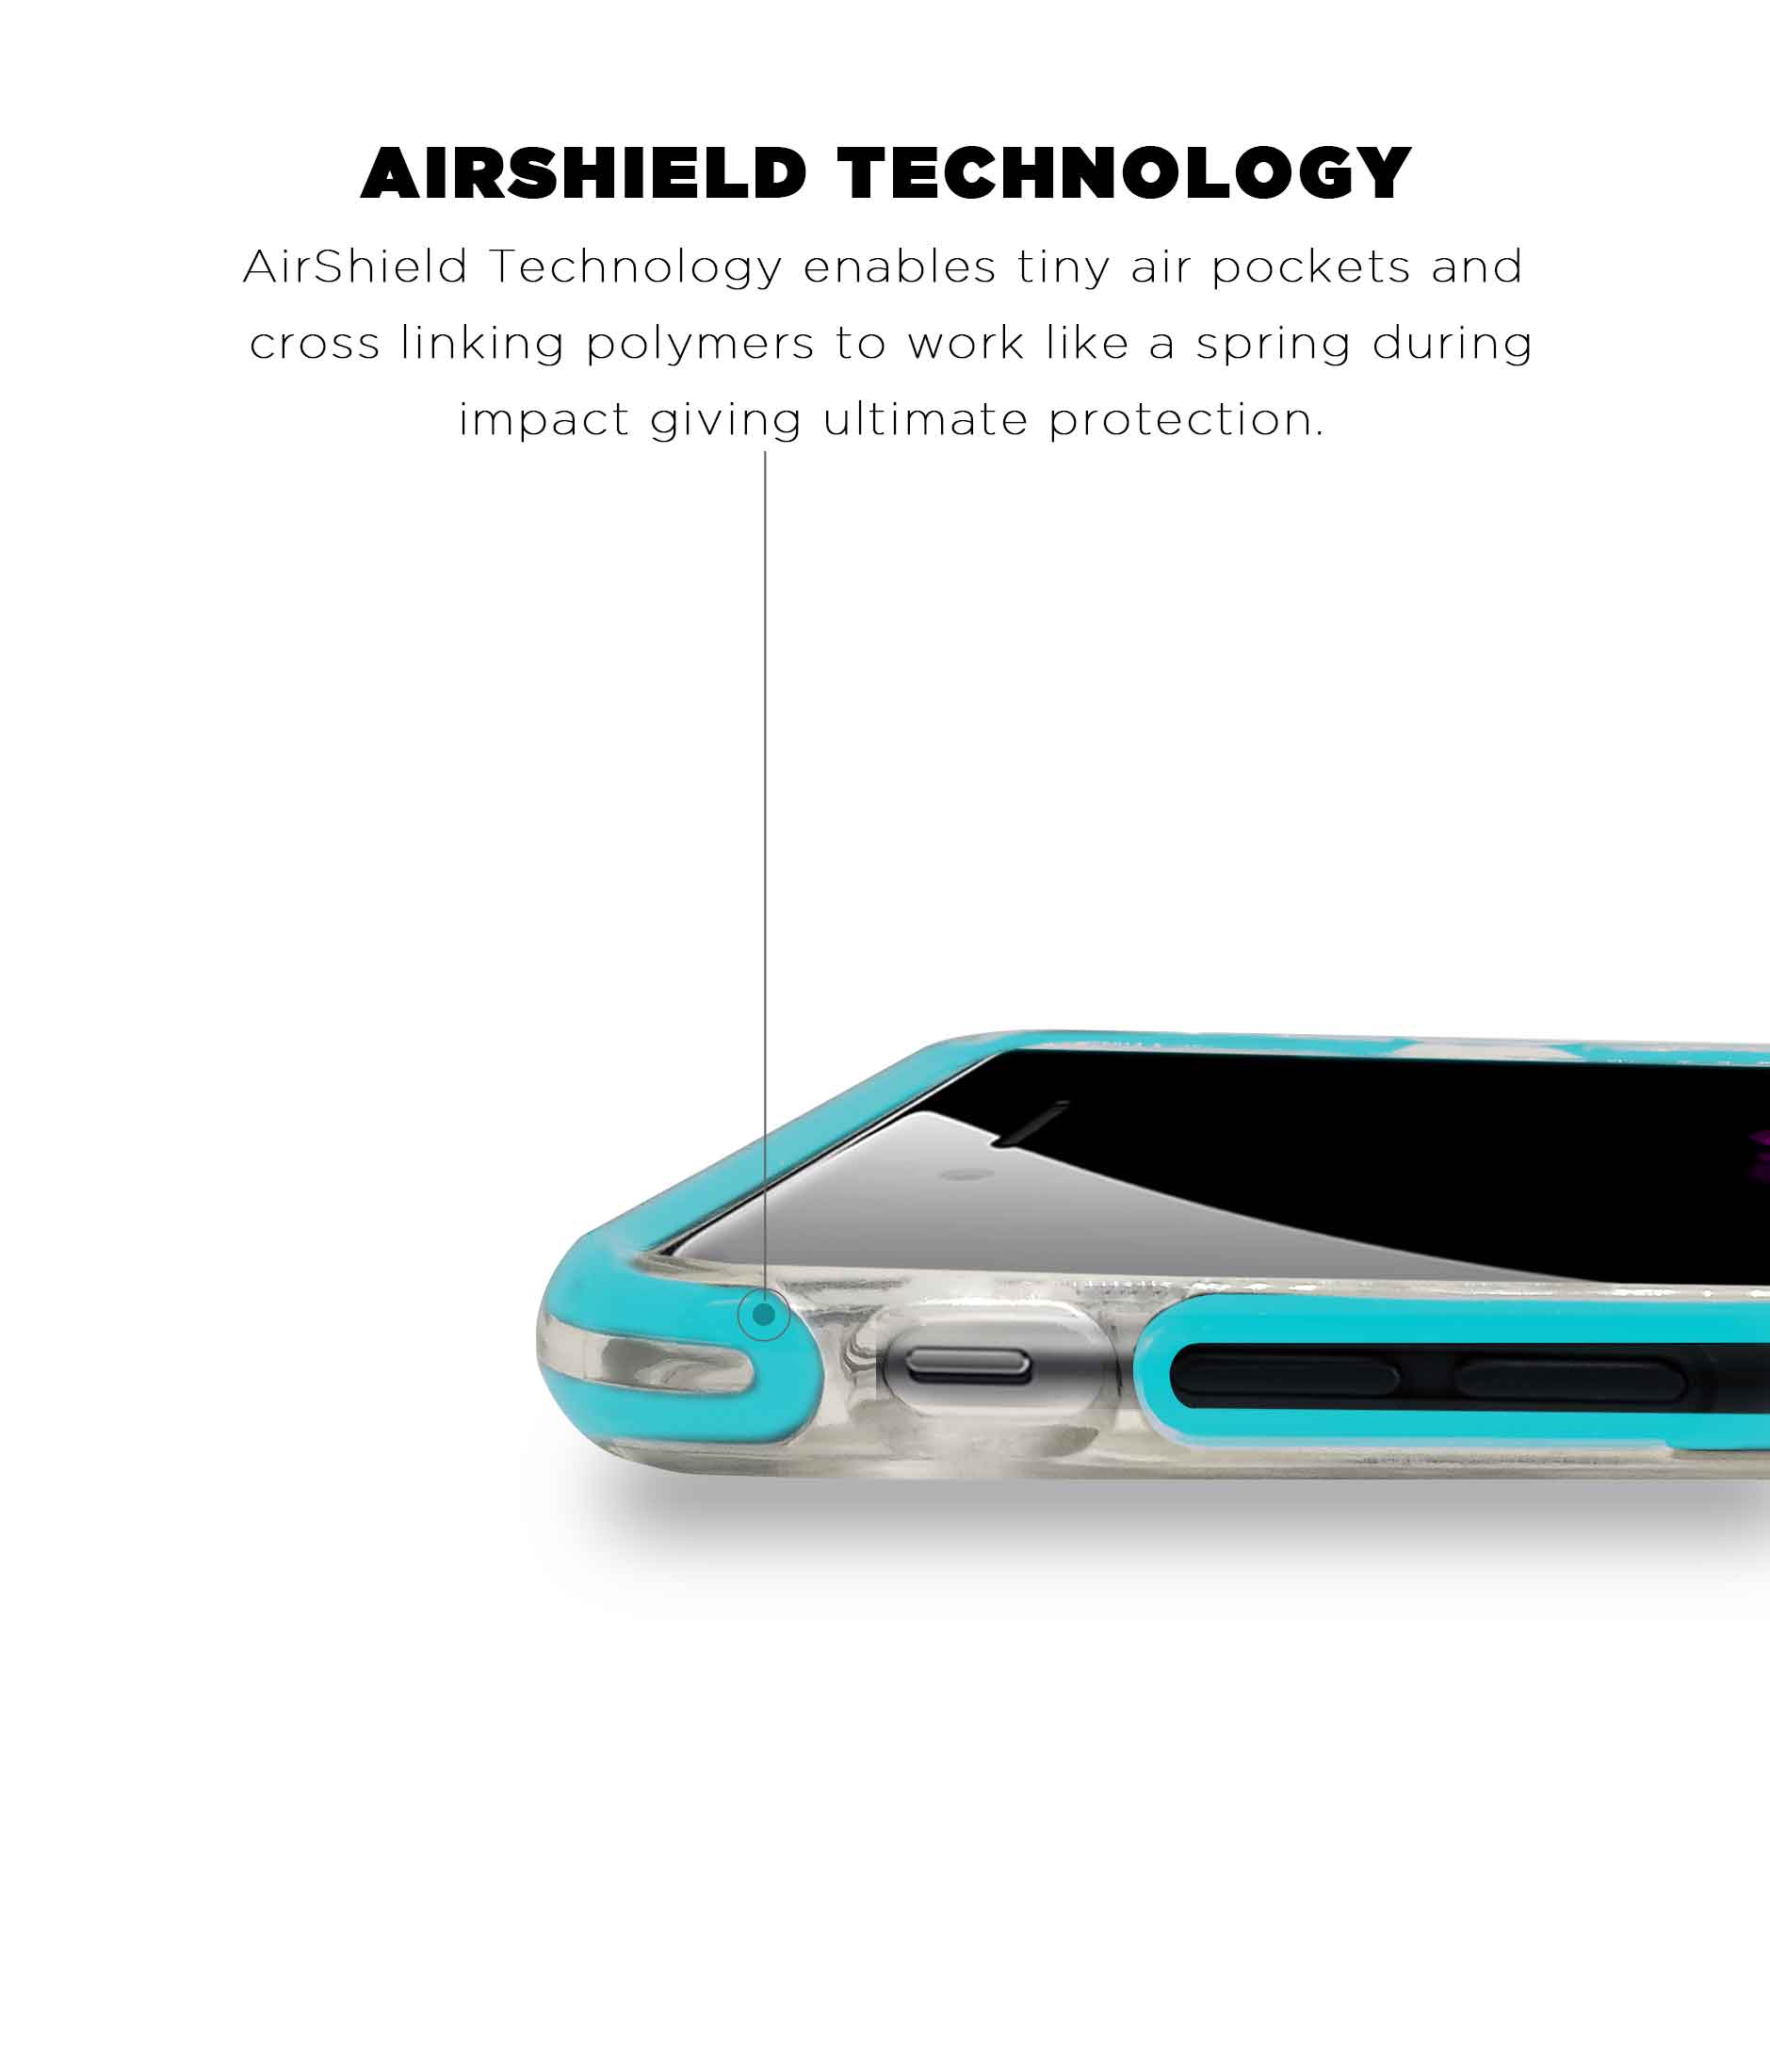 Illuminated Hulk - Extreme Phone Case for iPhone 7